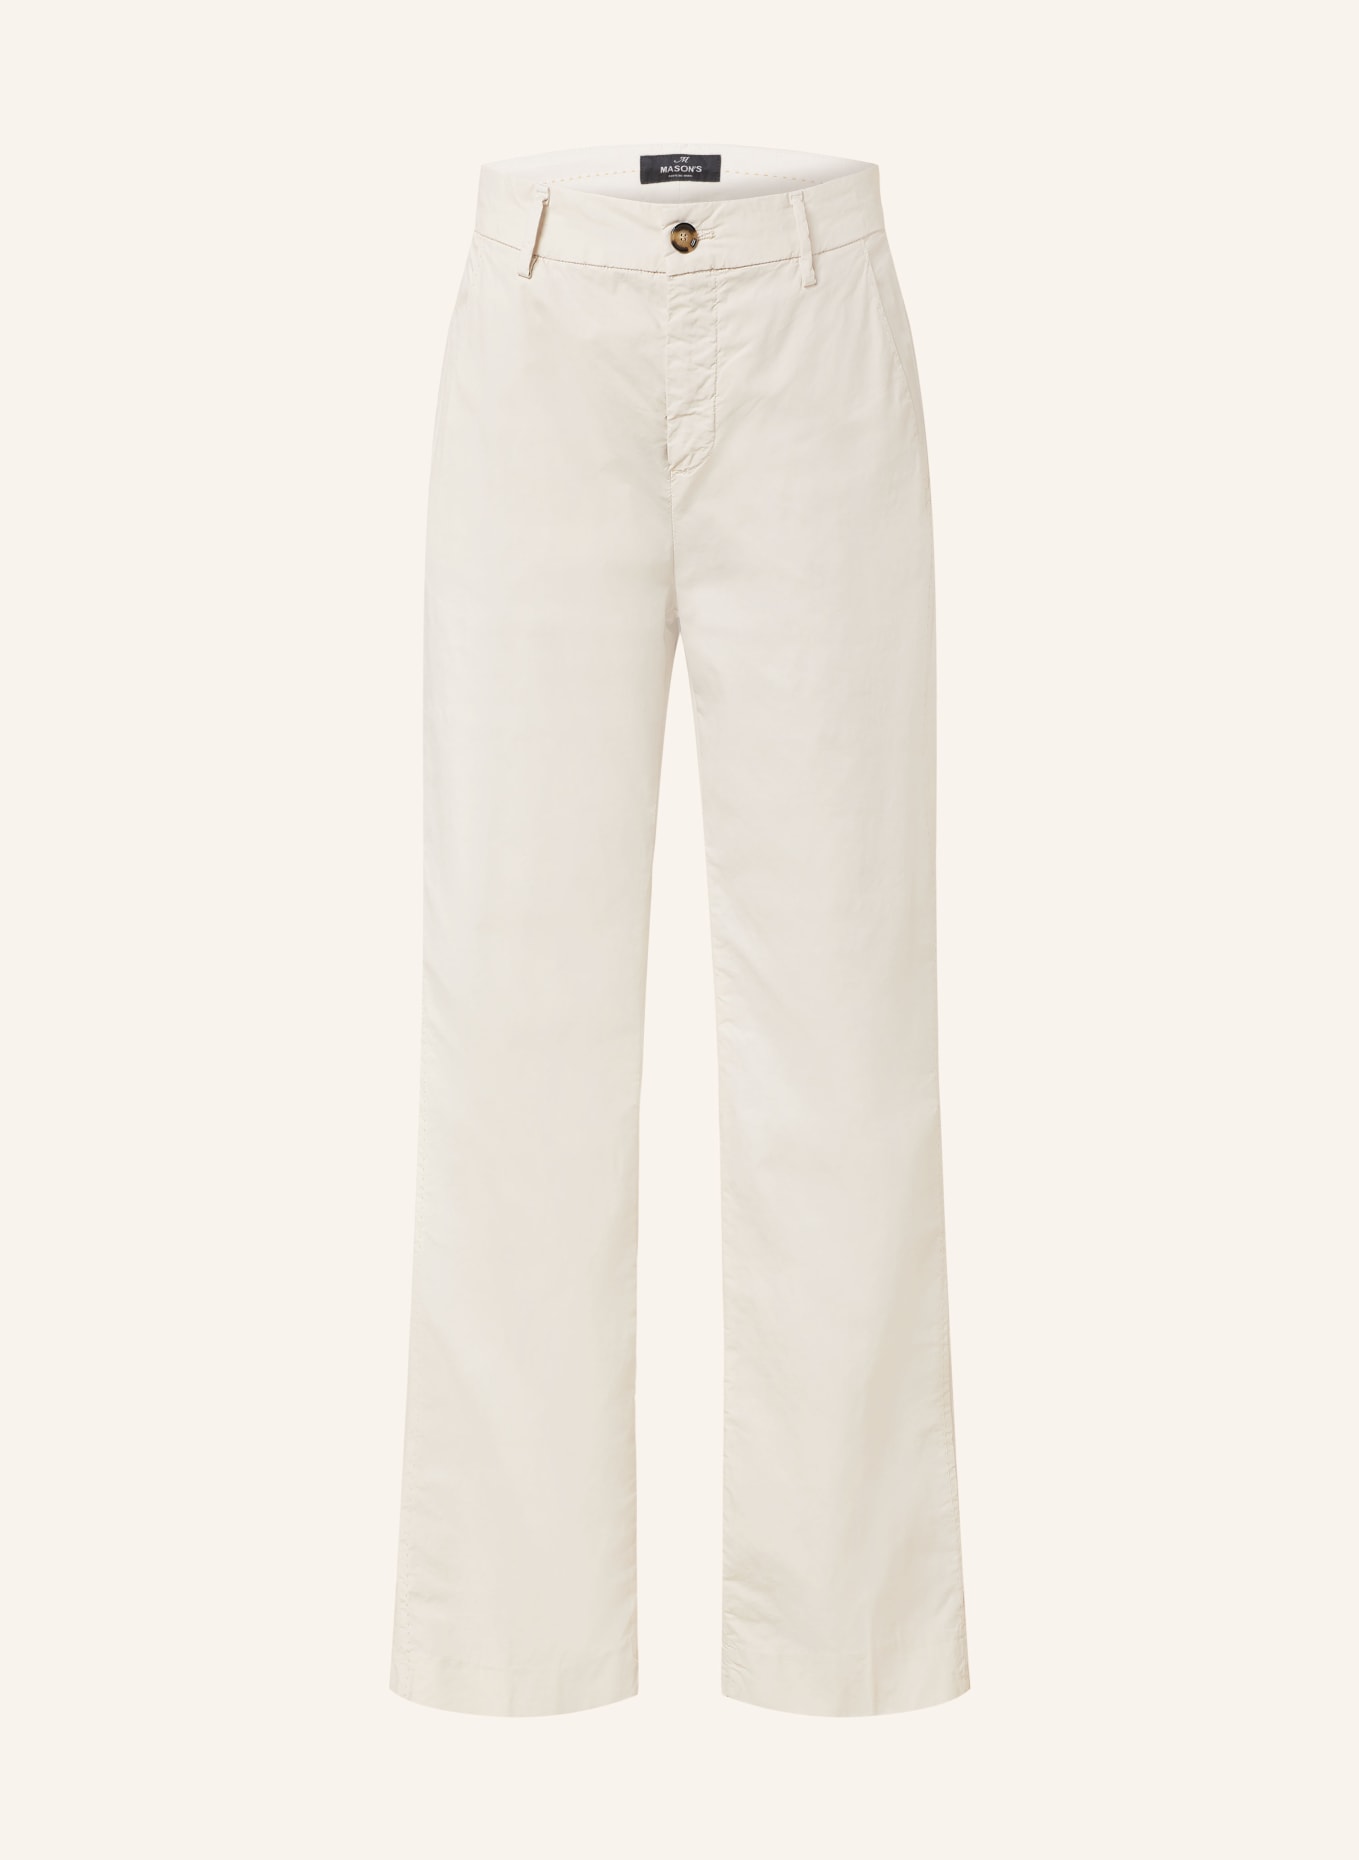 MASON'S Trousers, Color: CREAM (Image 1)